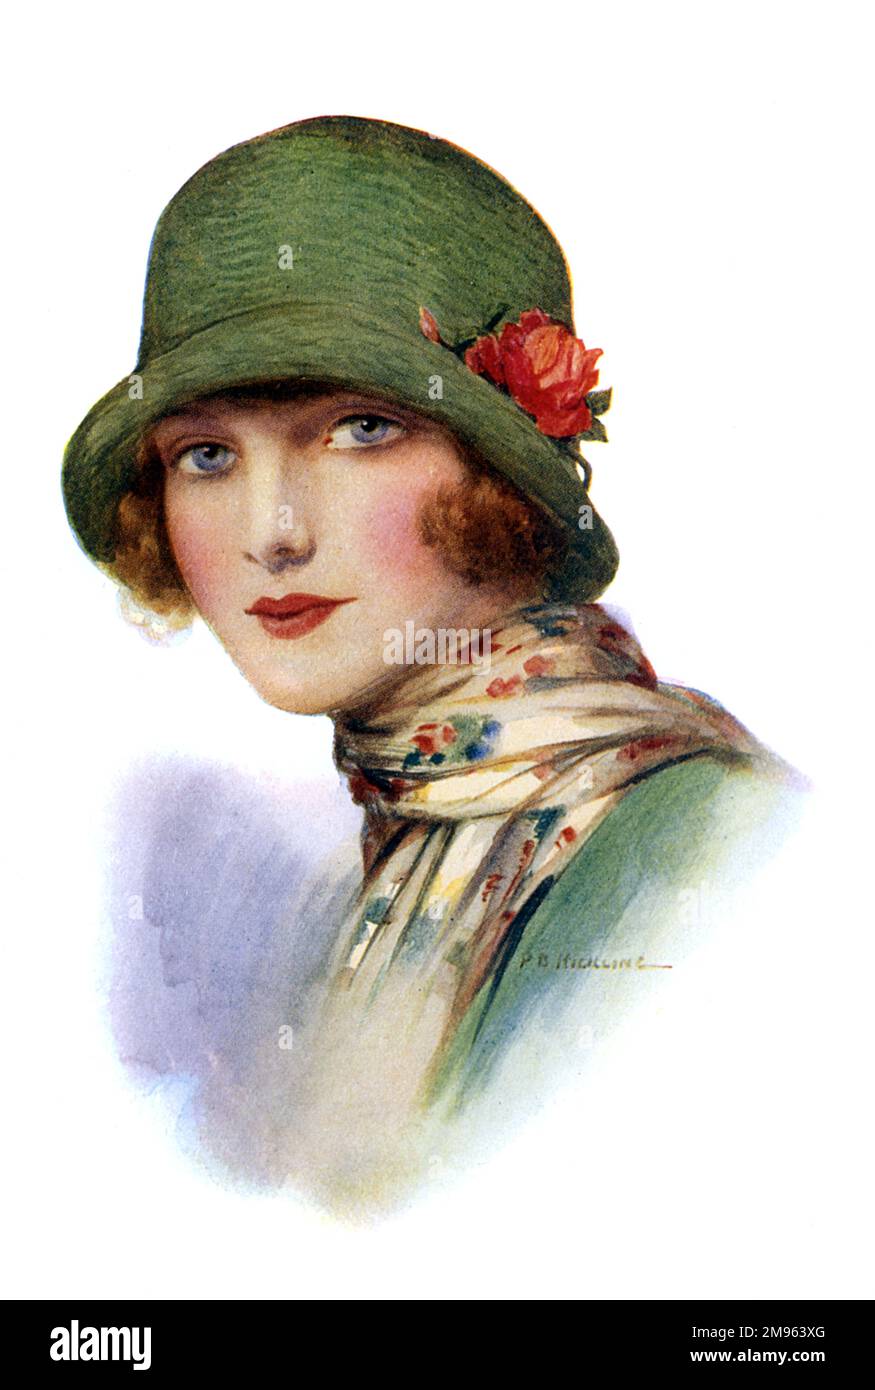 Eine rosige, junge blonde Frau in einem fabelhaften grünen Glockenhut mit einer umgedrehten Krempe und einer roten Rose. Sie trägt auch einen langen Schal mit Blumenmuster. Stockfoto